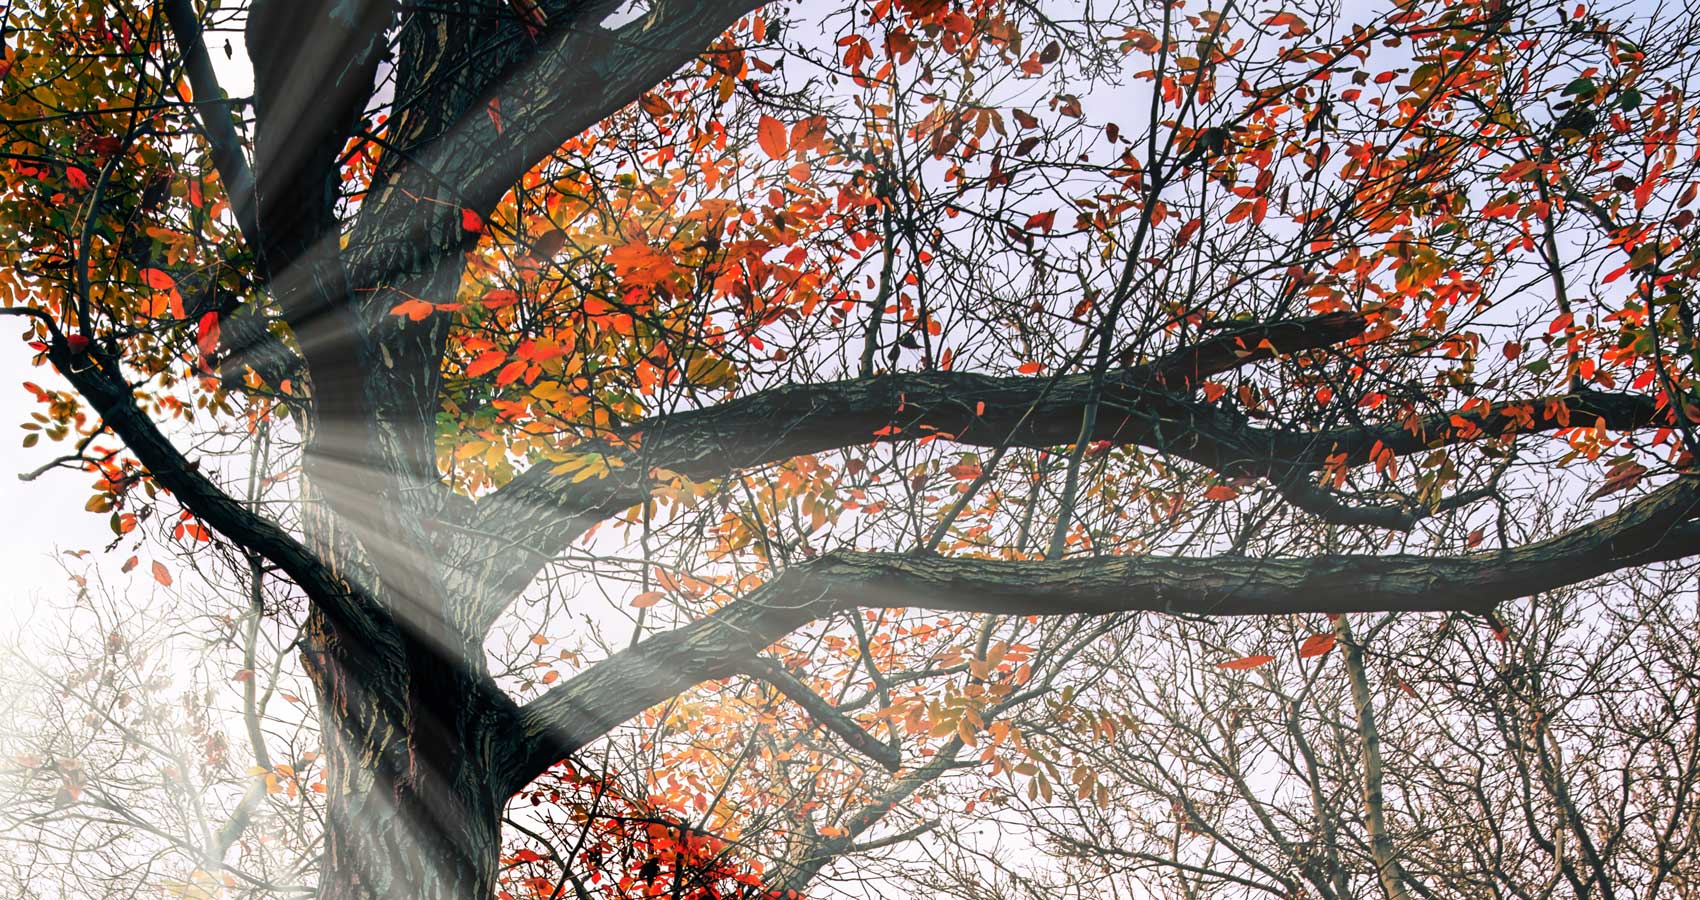 Autumn, a haiku written by Allison Xu at Spillwords.com